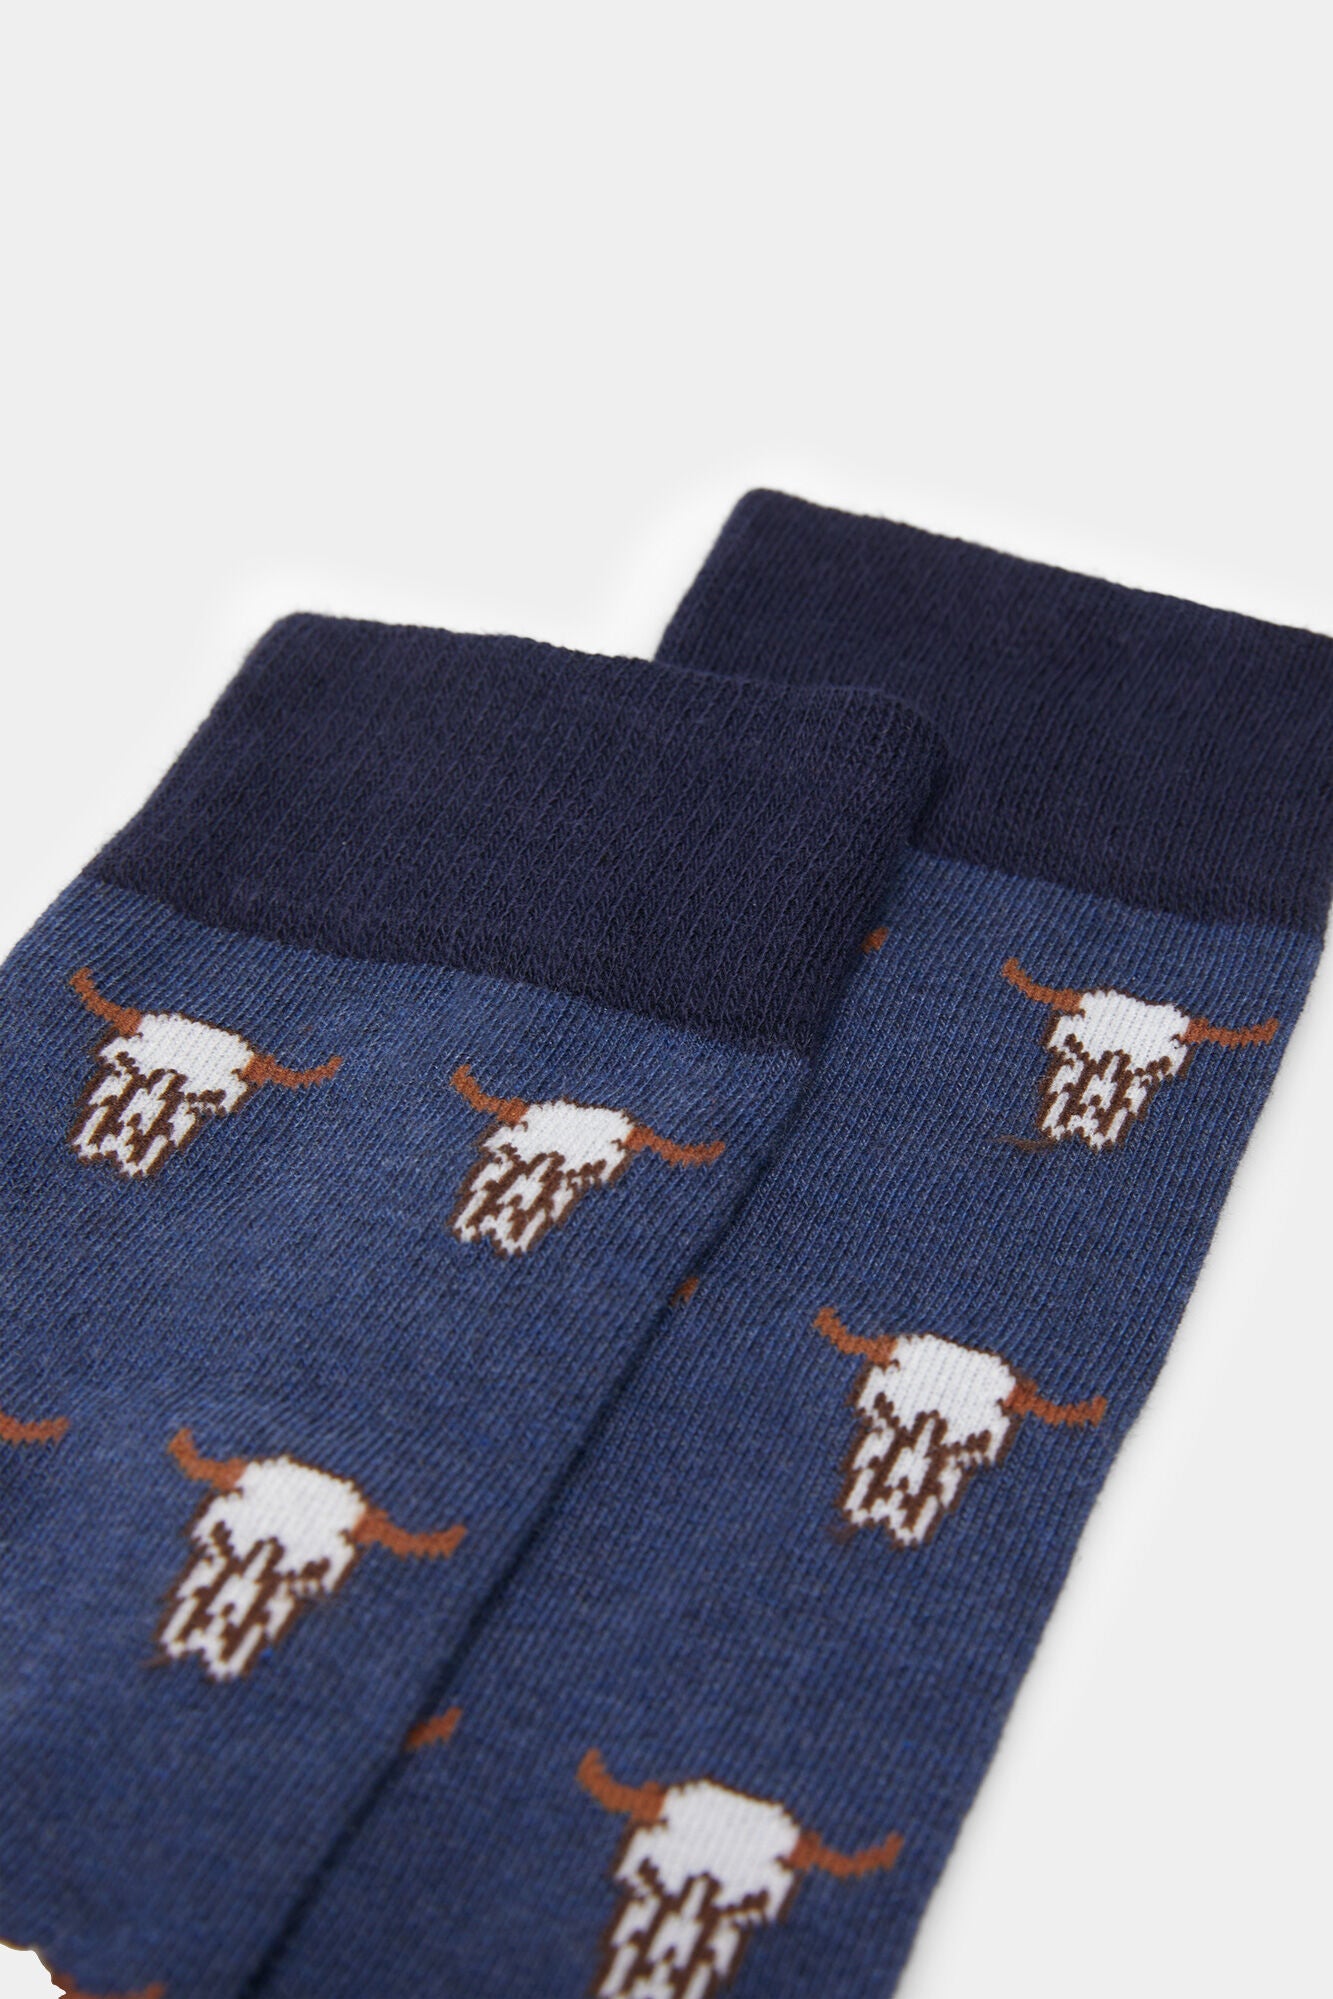 Long bison socks